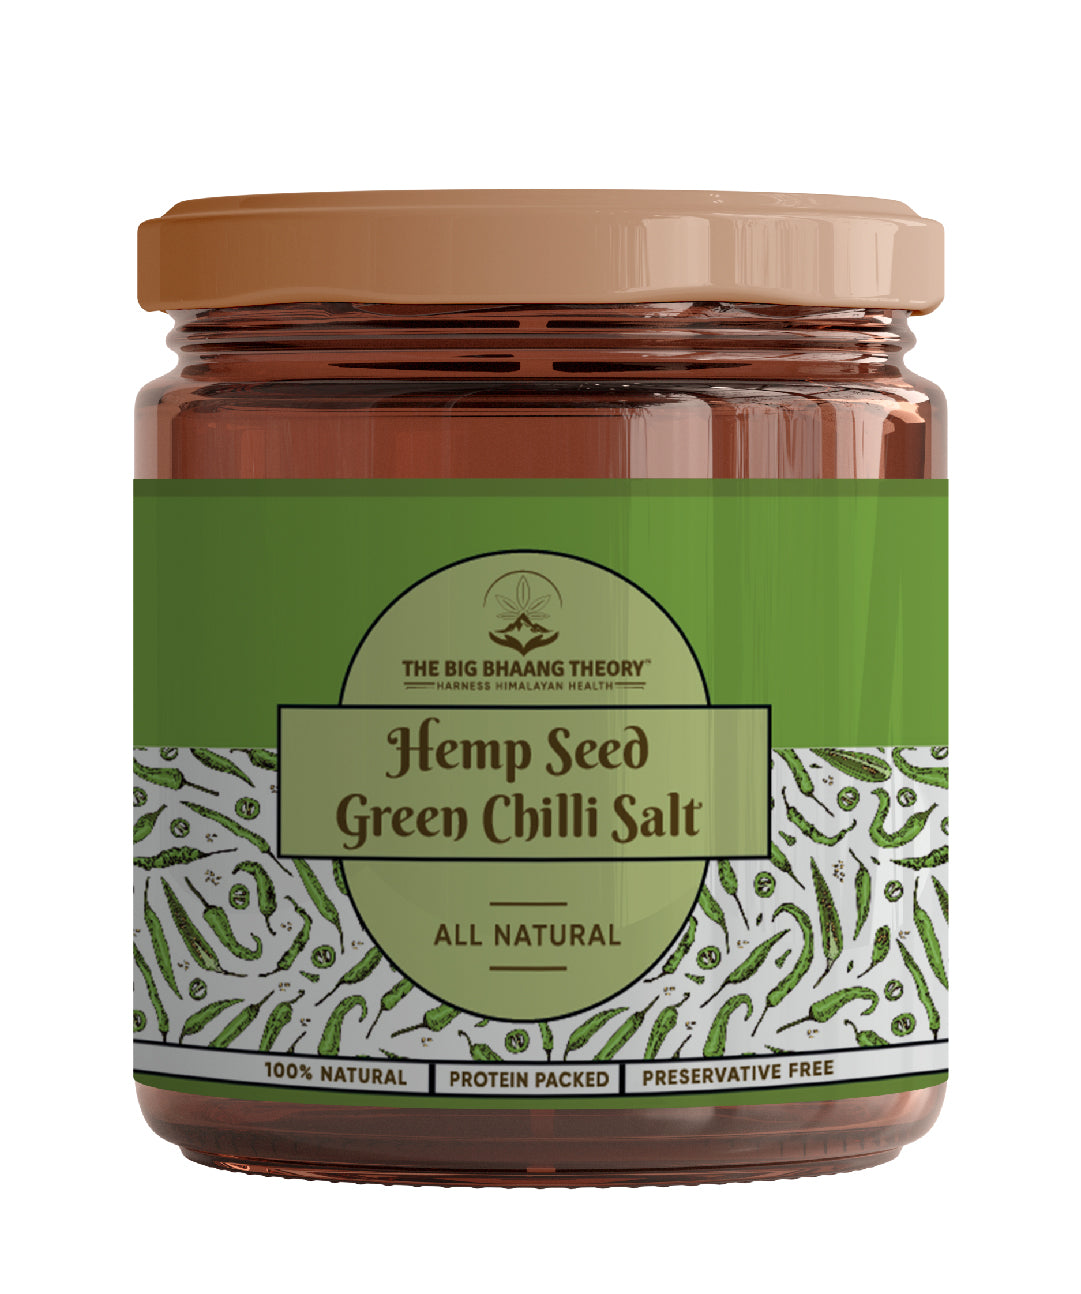 Hemp Seed Green Chilli Salt